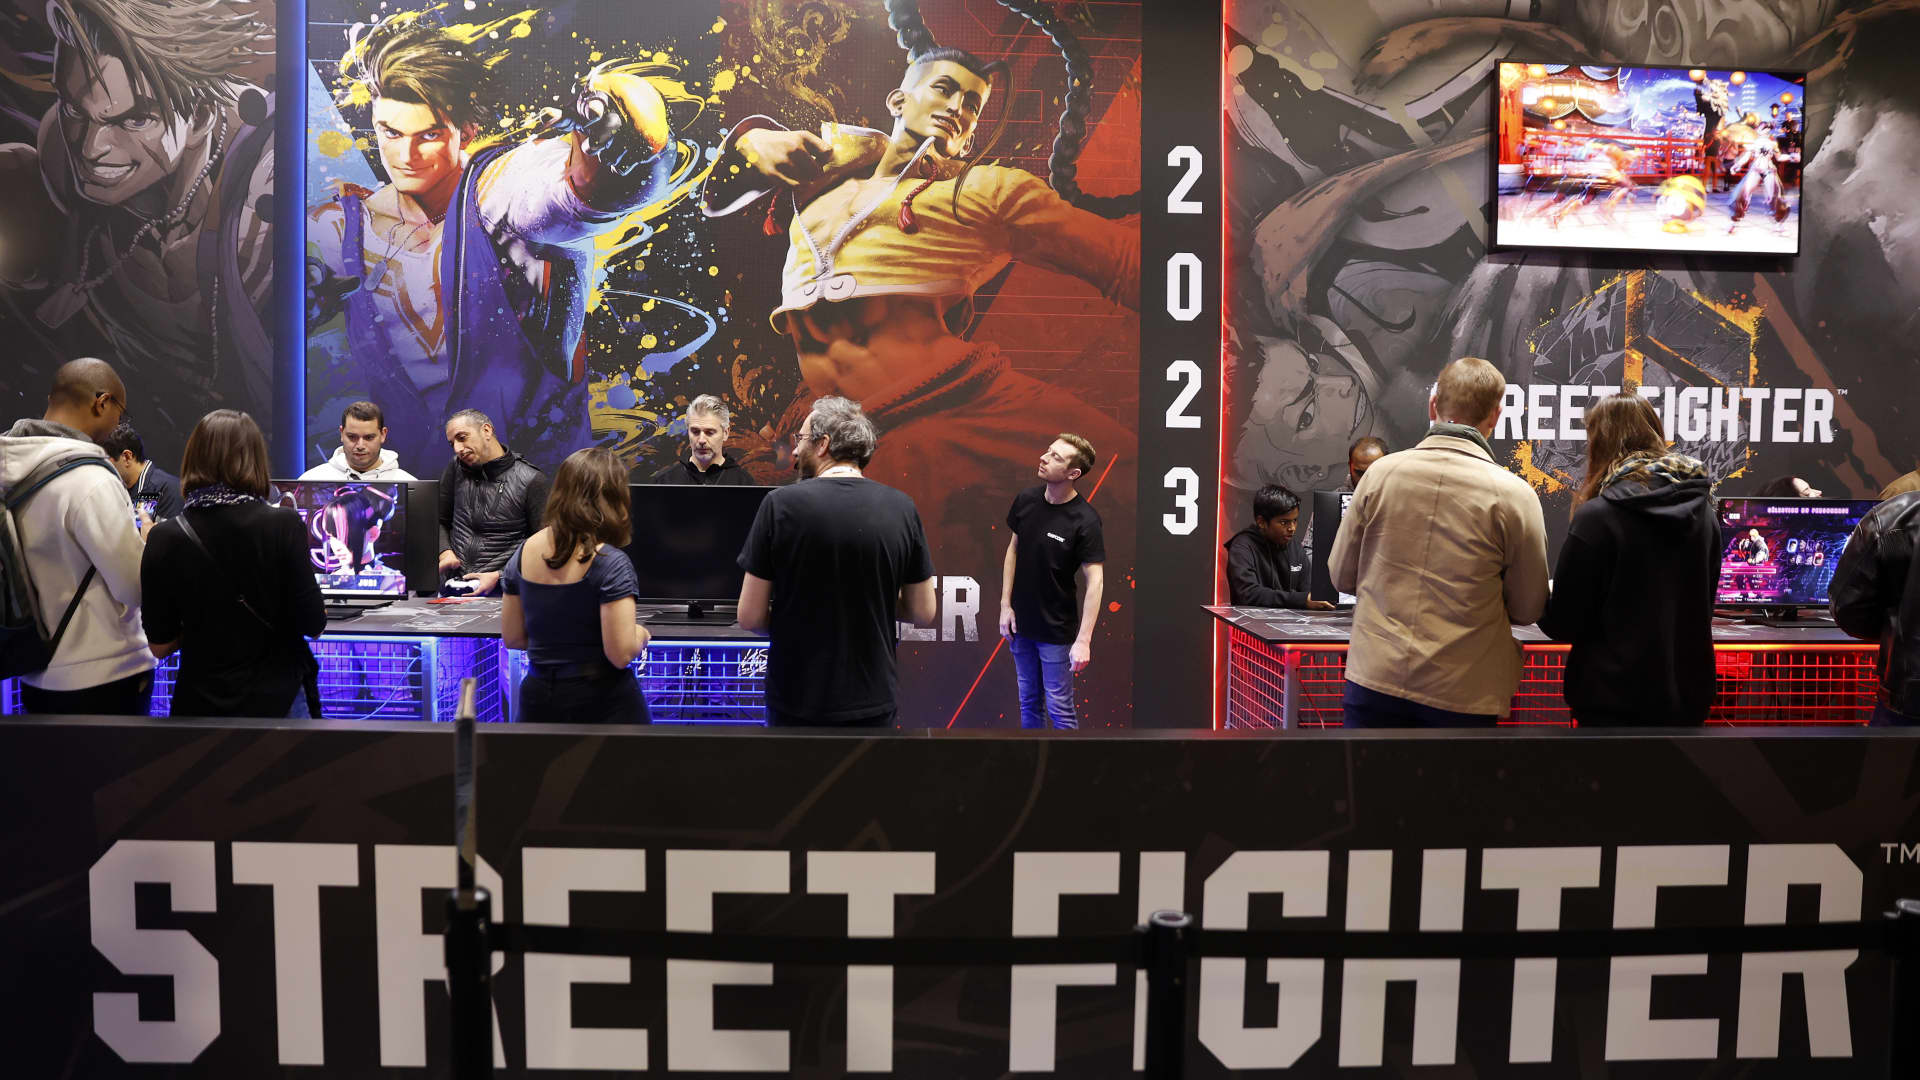 Street Fighter, Resident Evil maker Capcom on synergy in films, gaming